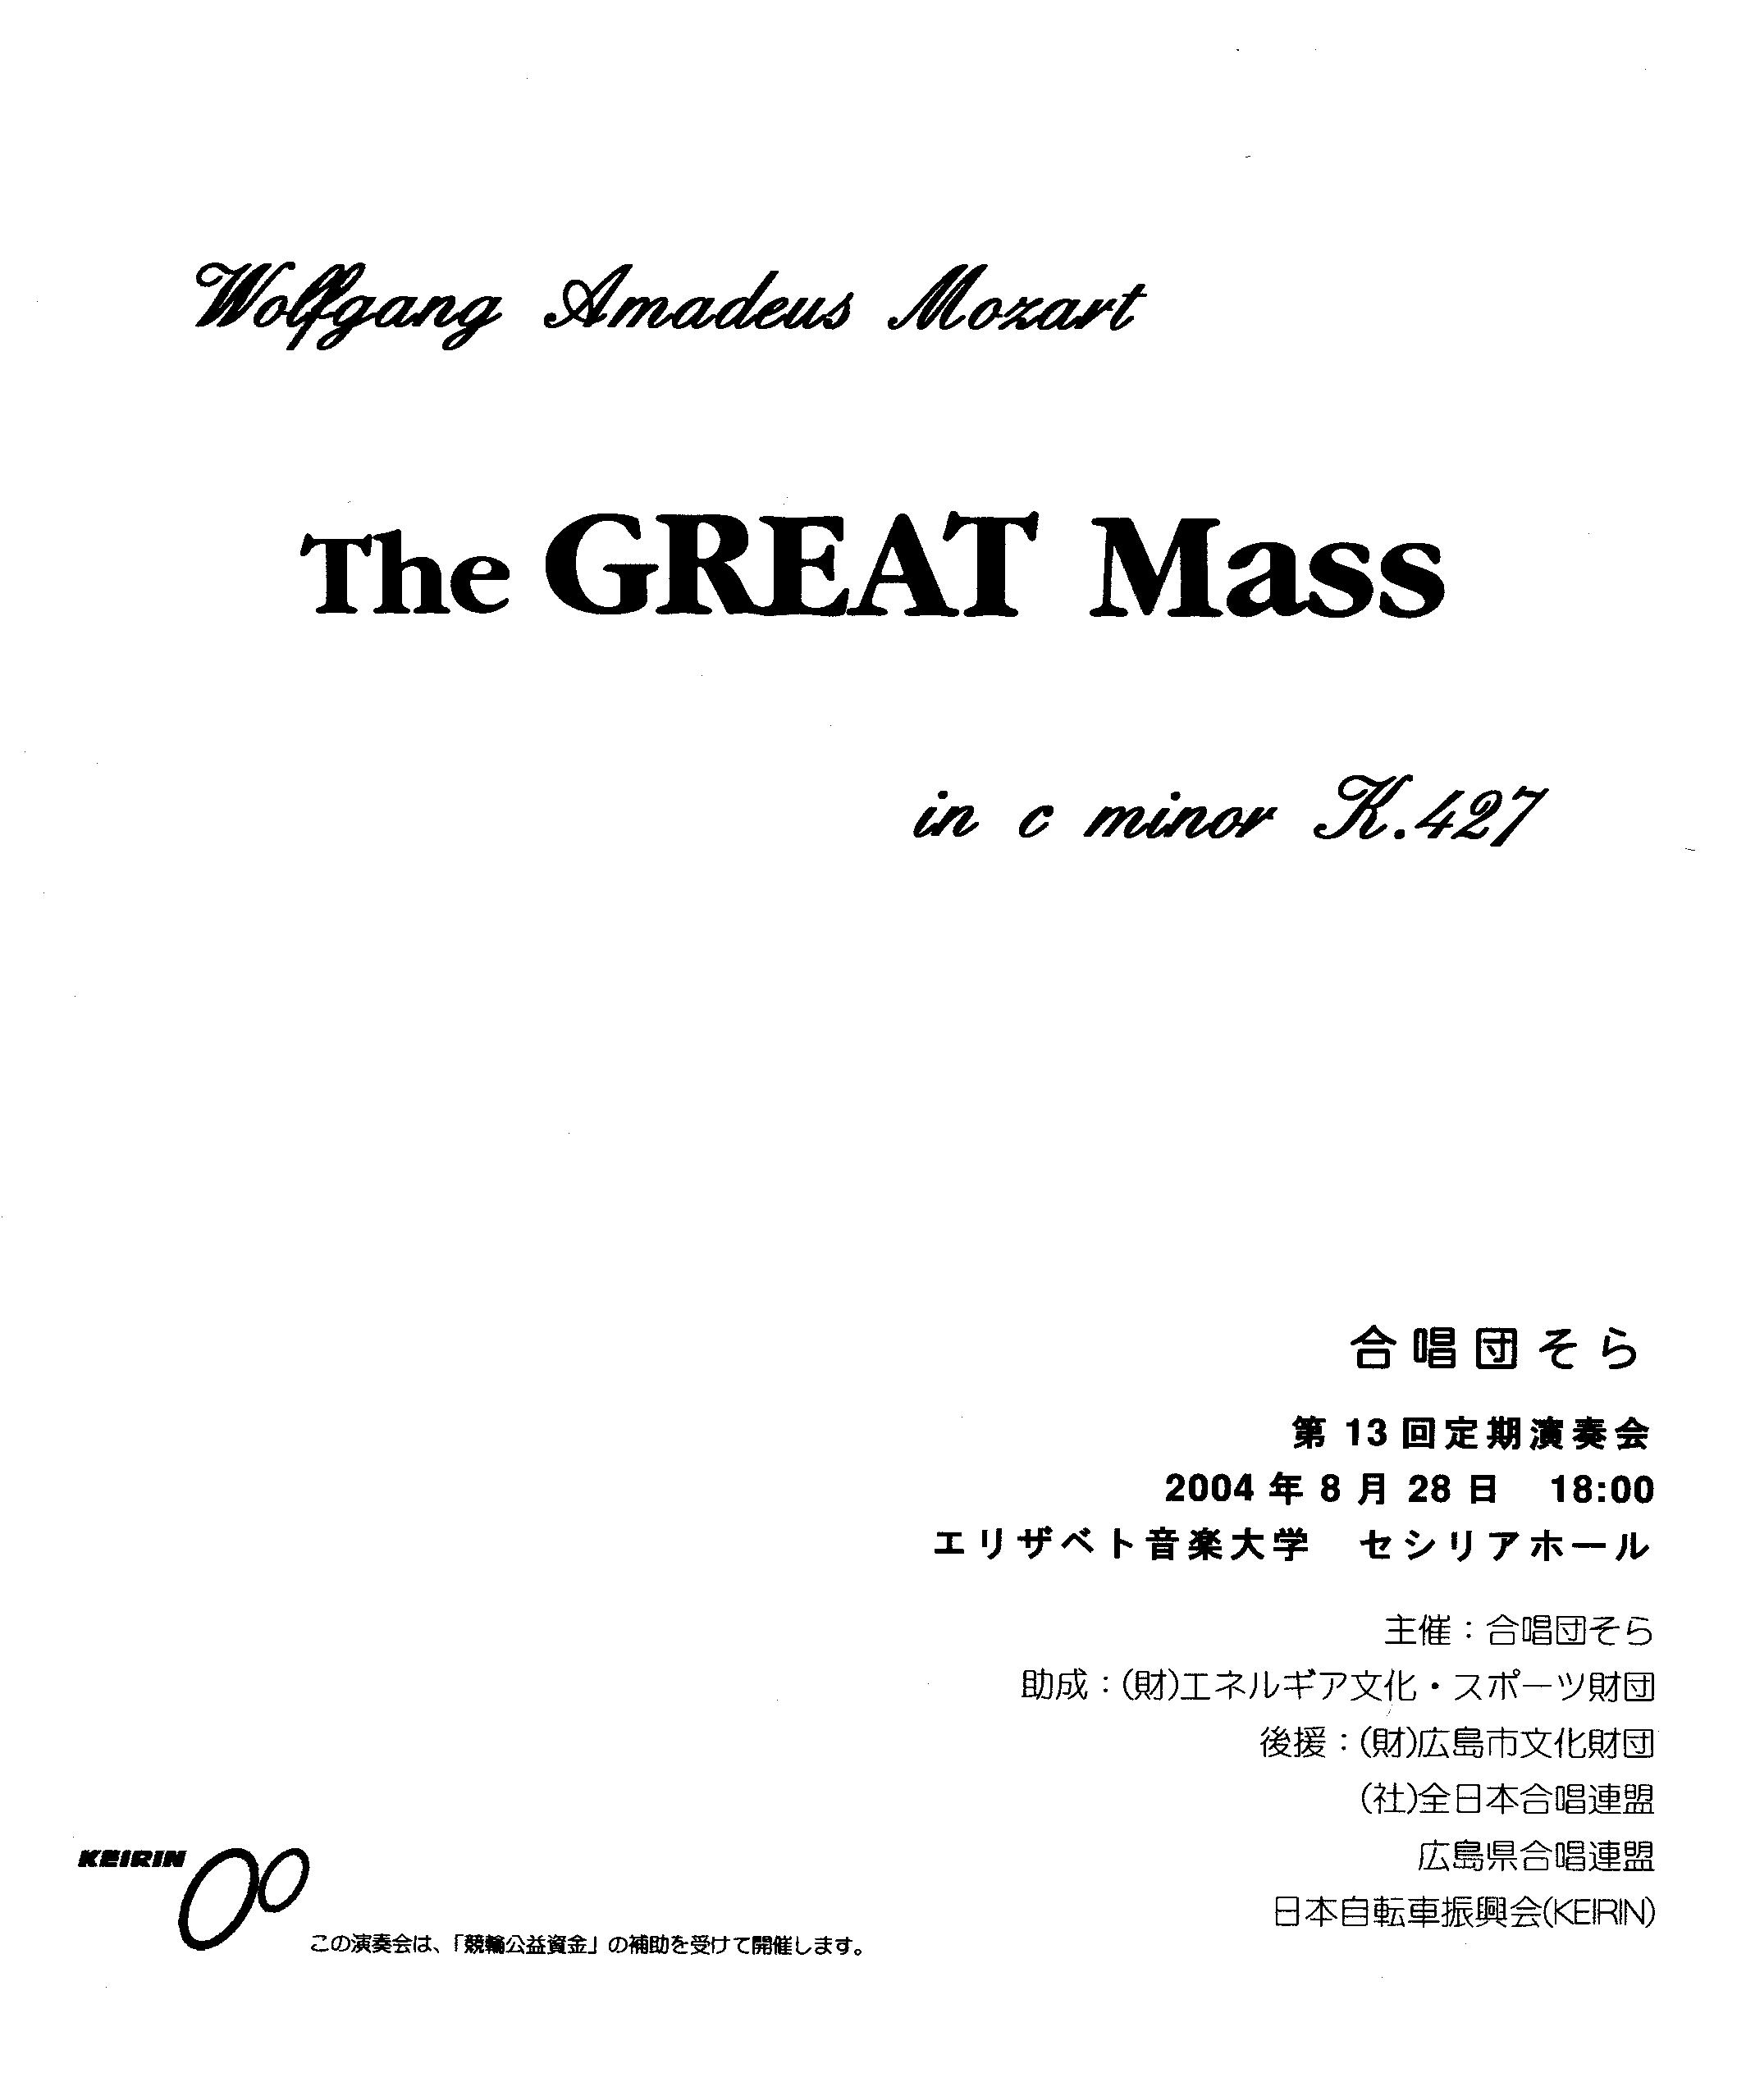 leaflet